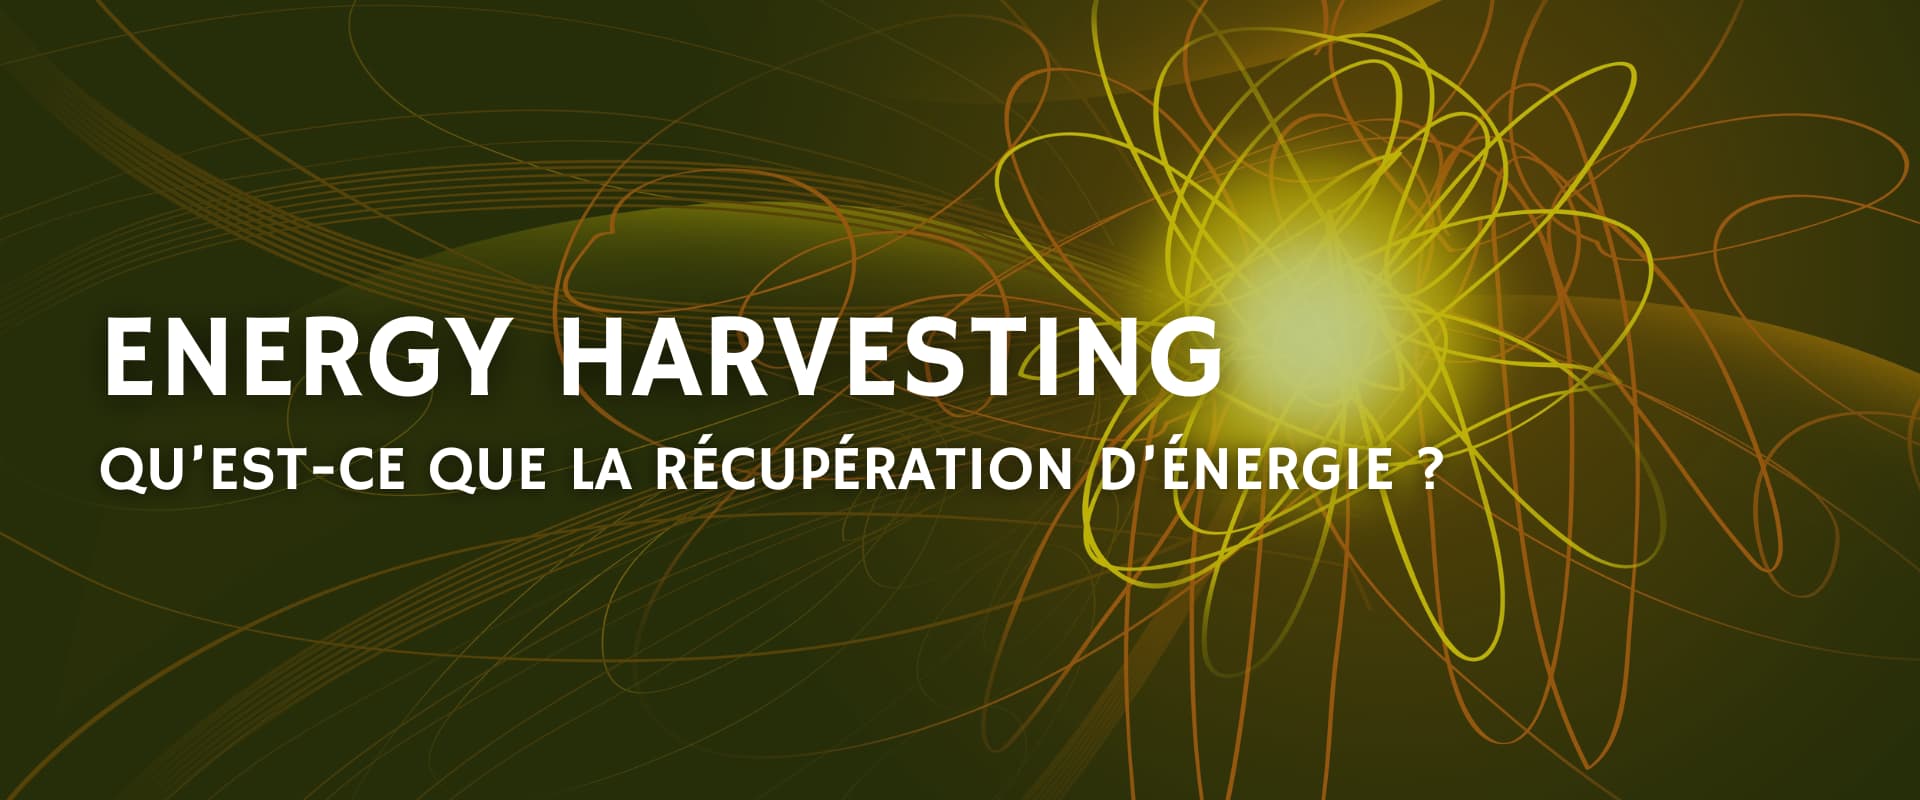 Tout savoir sur l'energy harvesting